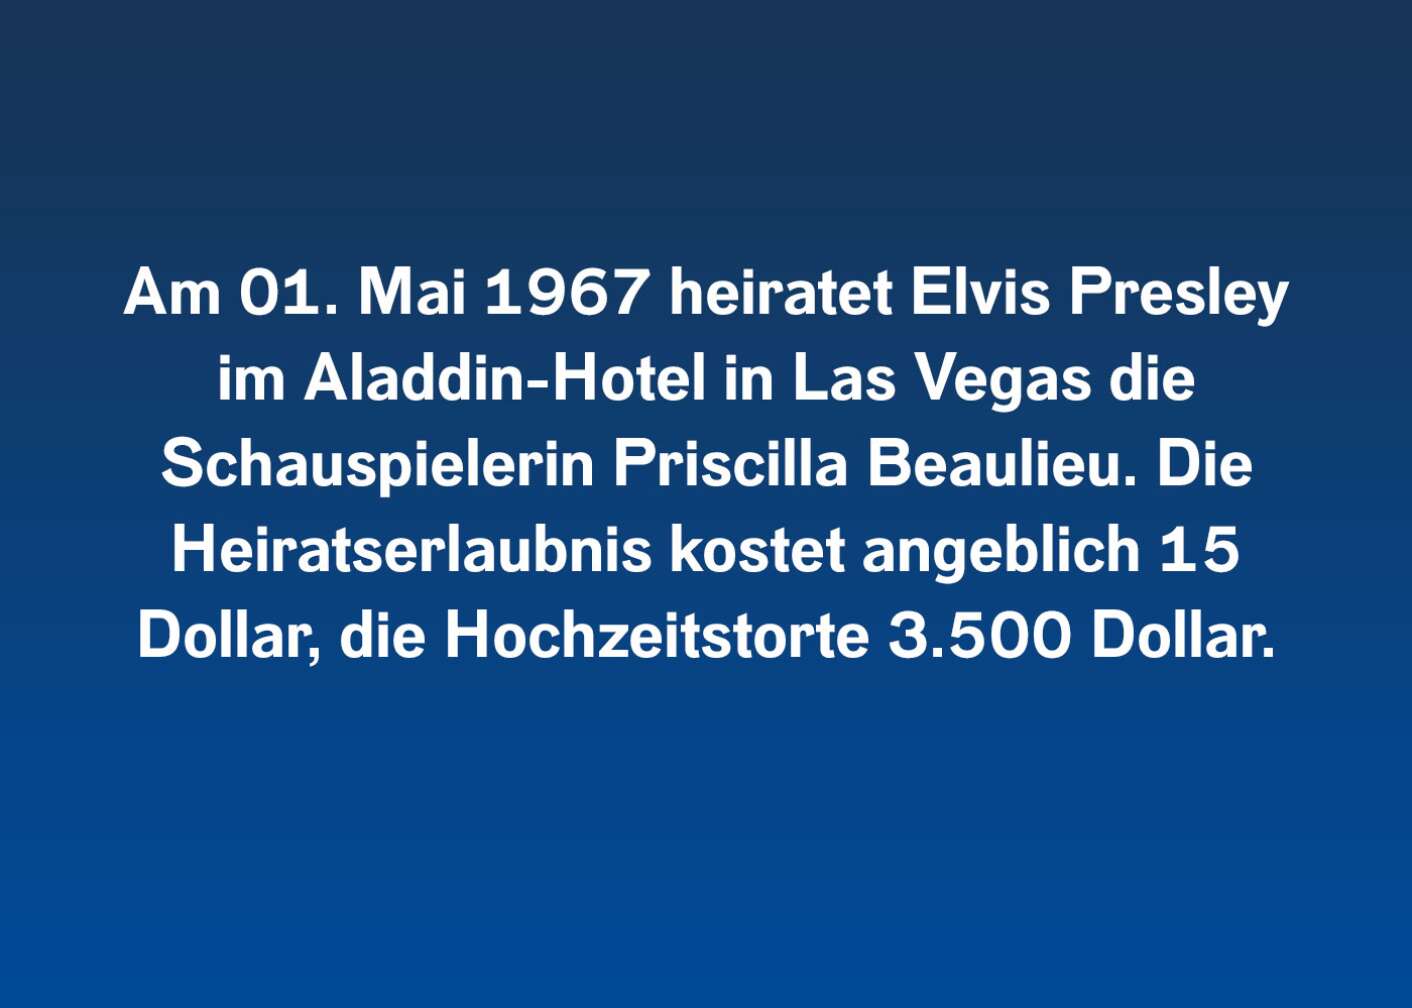 Am 01. Mai 1967 heiratet Elvis Presley im Aladdin-Hotel in Las Vegas die Schauspielerin Priscilla Beaulieu. Die Heiratserlaubnis kostet angeblich 15 Dollar, die Hochzeitstorte 3.500 Dollar.